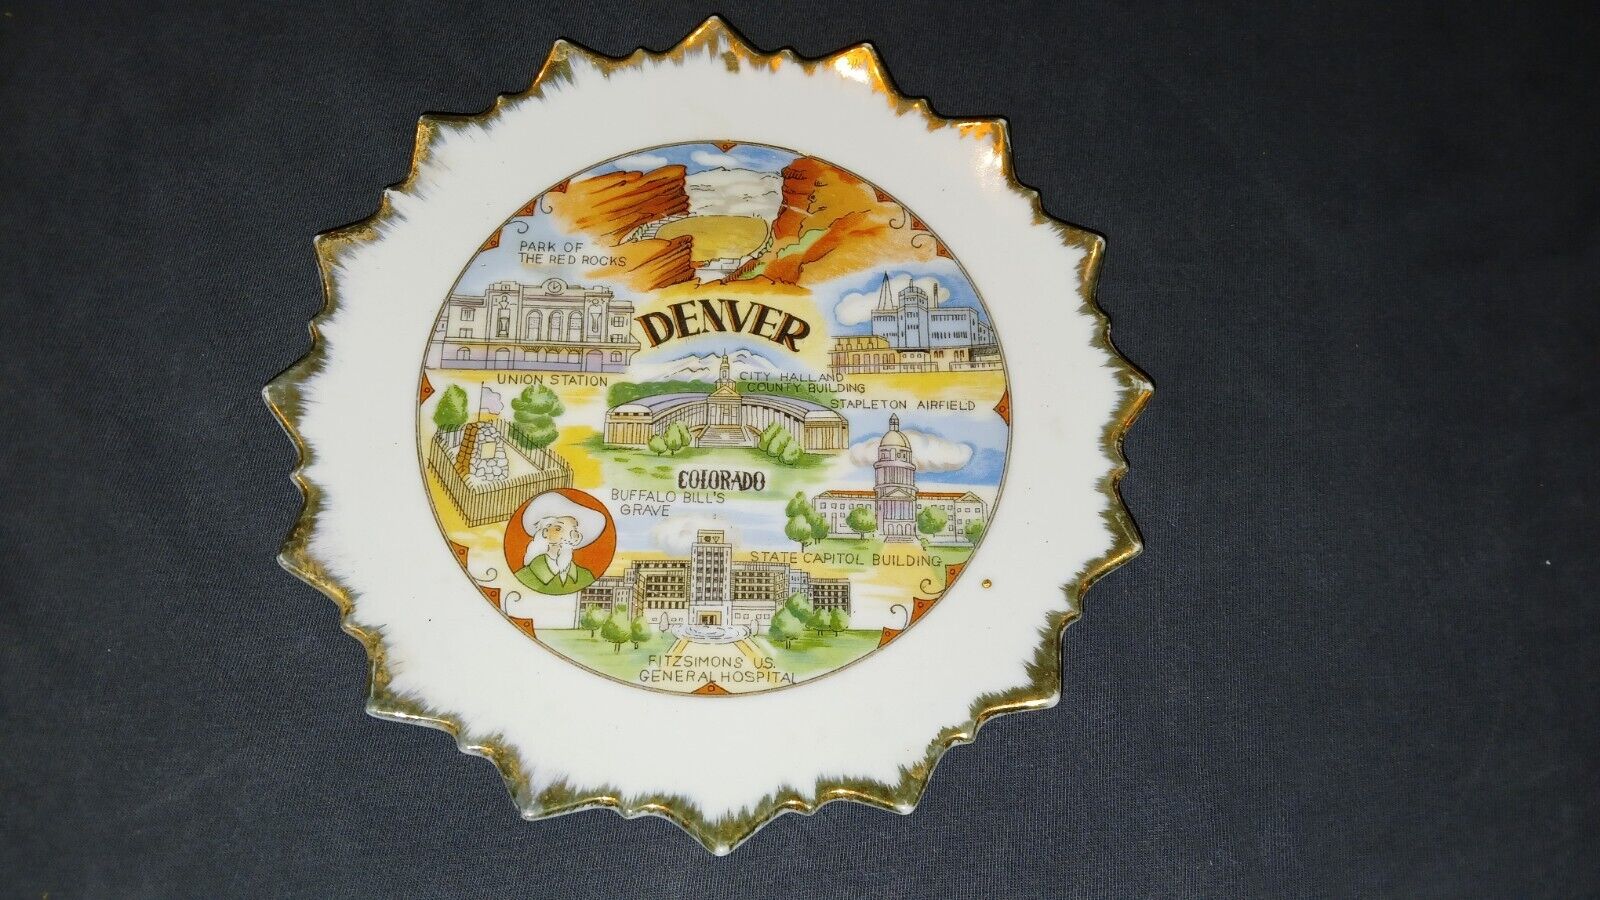 Denver, Colorado glass souvenir plate.